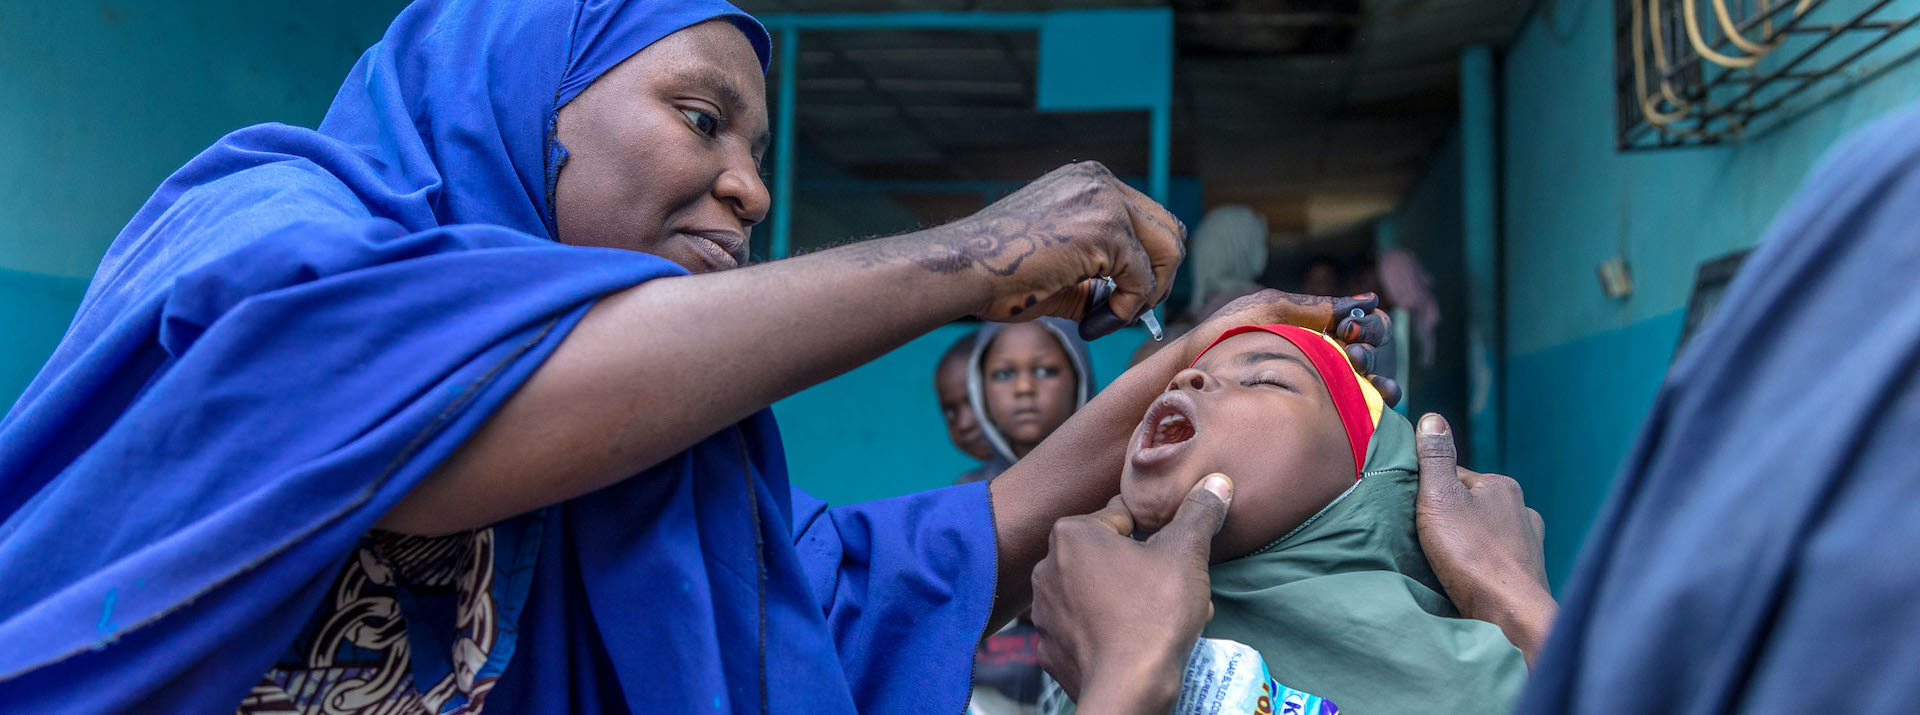 Le statut de l'Afrique en tant que région exempte de polio sauvage sera déterminé en août